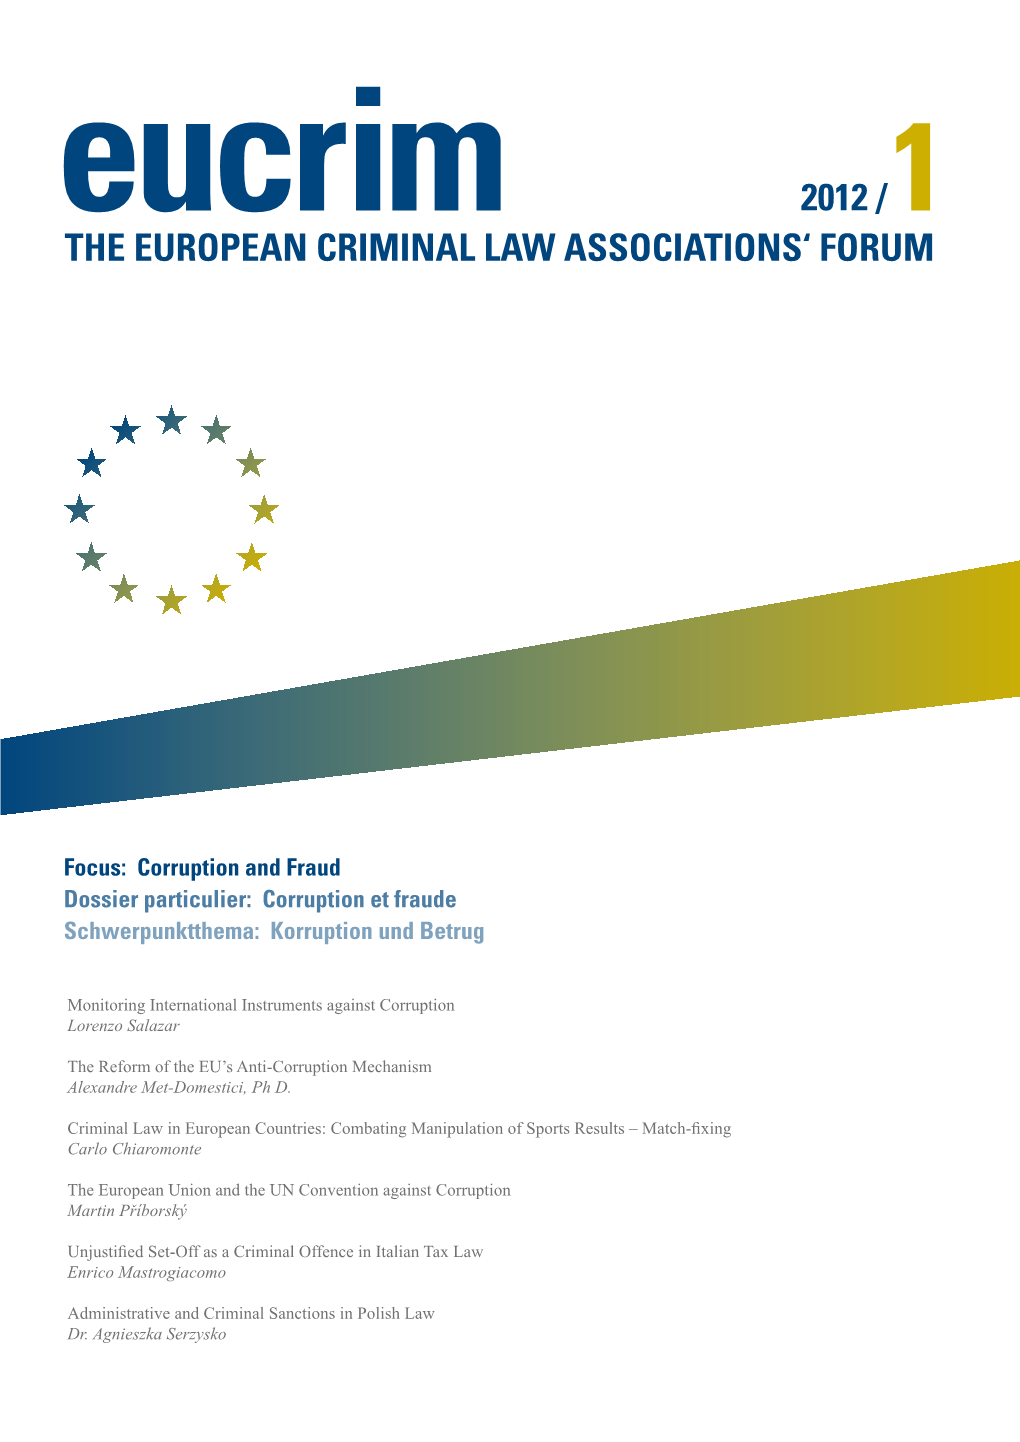 The European Criminal Law Associations' Forum 2012 /1